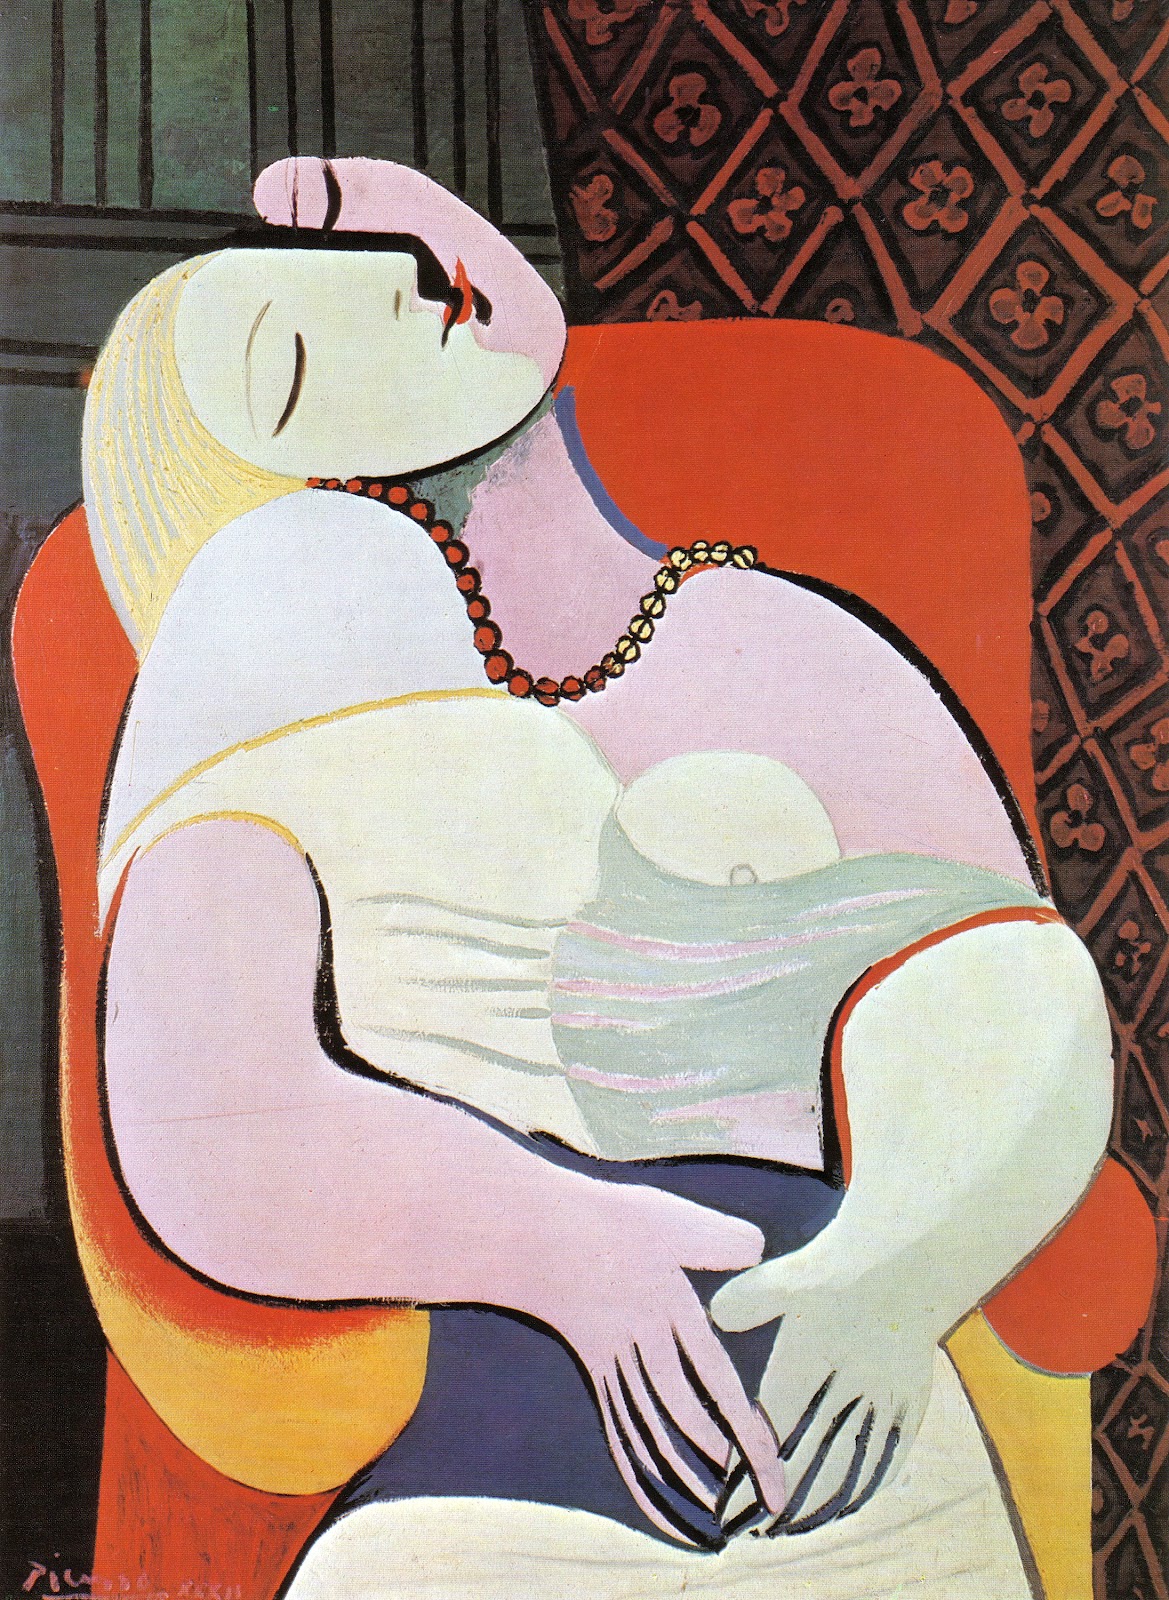 La Rêve (Il Sogno) by Pablo Picasso - 1932 - 130 × 97 cm collezione privata